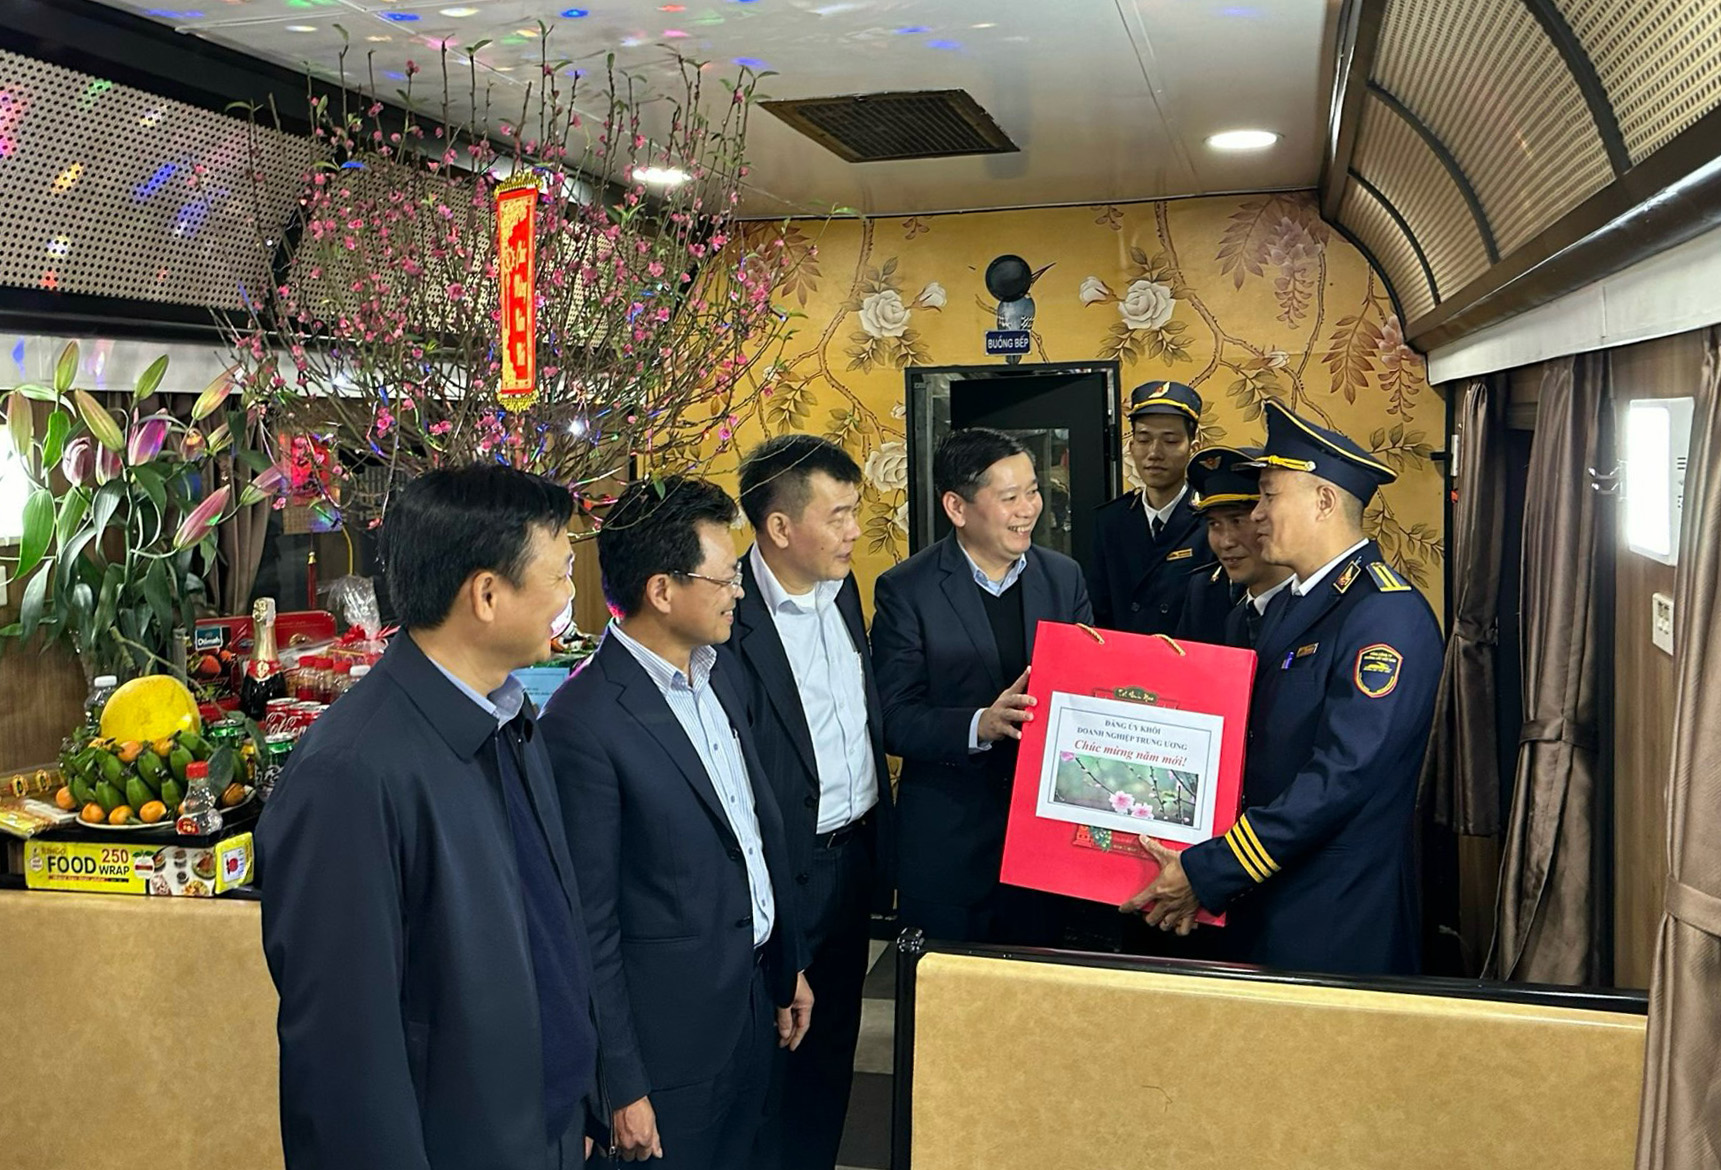 Đồng chí Nguyễn Long Hải và Đoàn công tác của Đảng ủy Khối Doanh nghiệp Trung ương đã đi kiểm tra, thị sát công tác phục vụ hành khách tại Ga Hà Nội và thăm hỏi động viên các cán bộ, nhân viên đường sắt trong ca làm việc ngày 29 Tết.